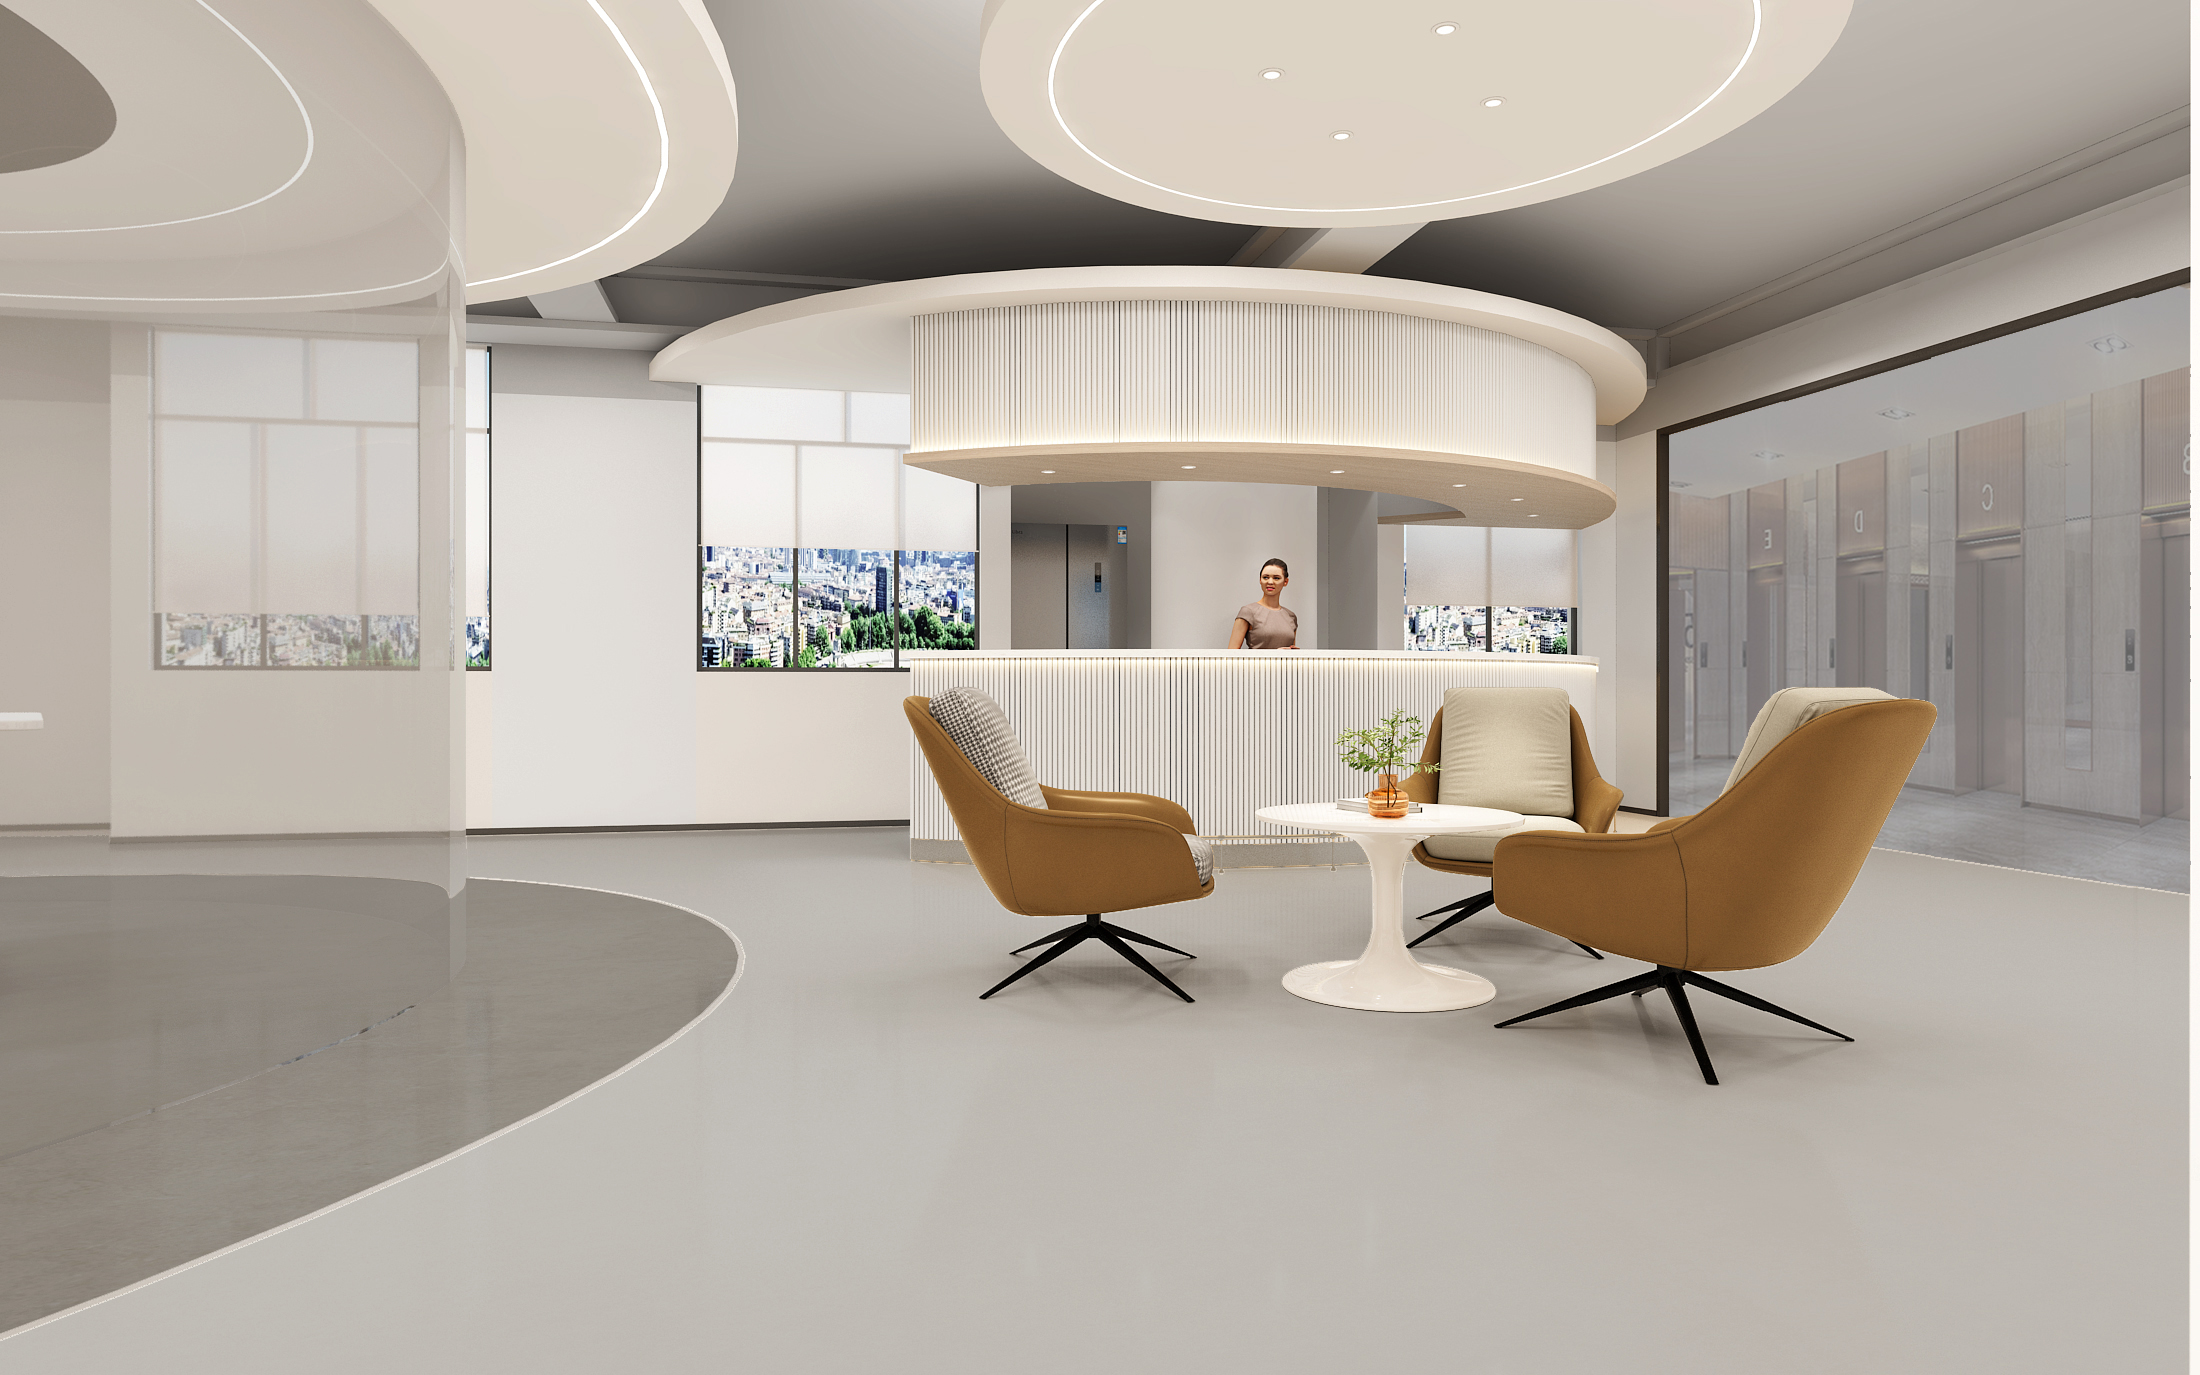 夢想工作空間！這個1000平米辦公室設計裝修要想快活就快活！